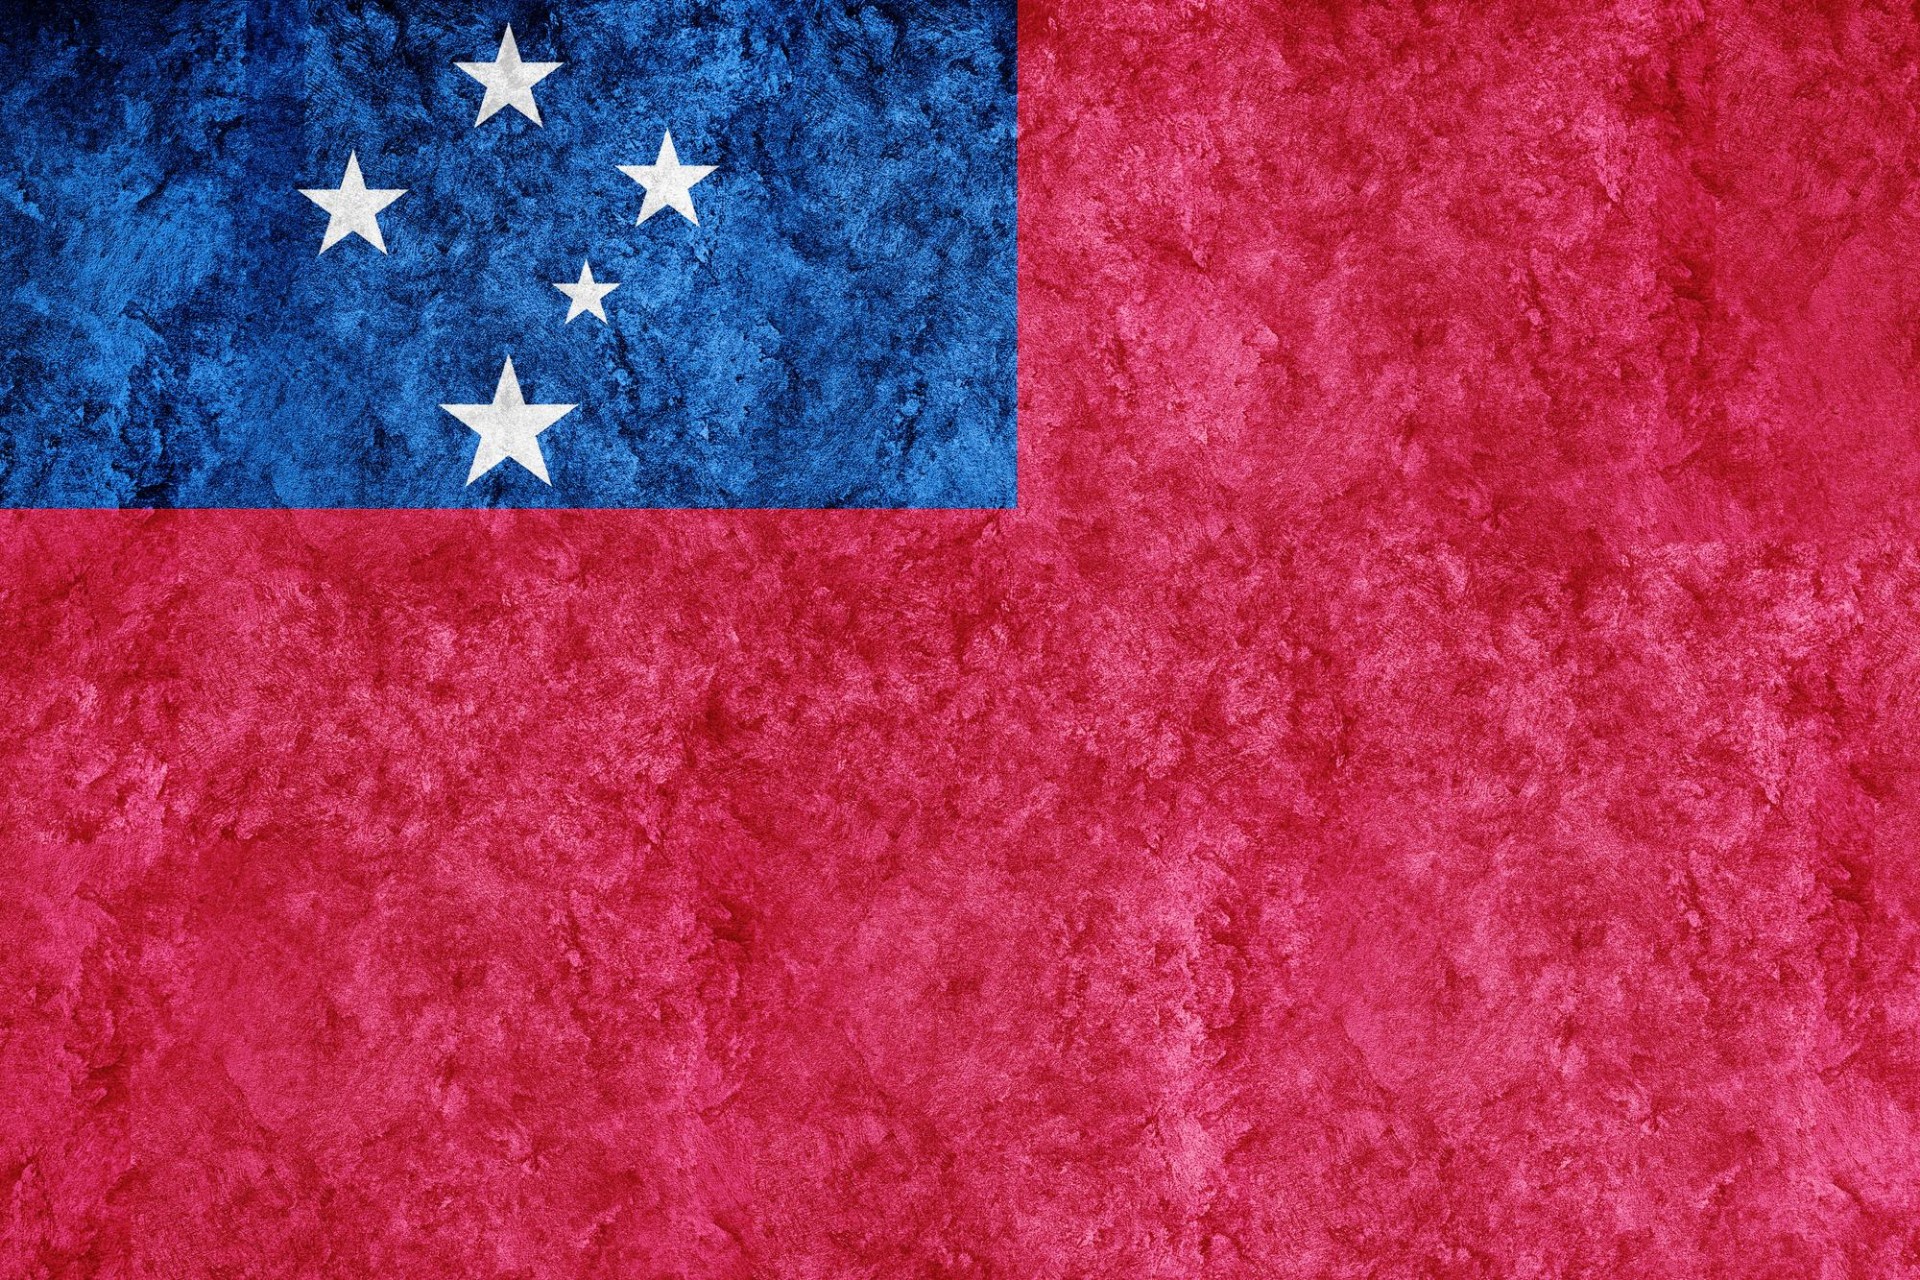 Flag of Samoa